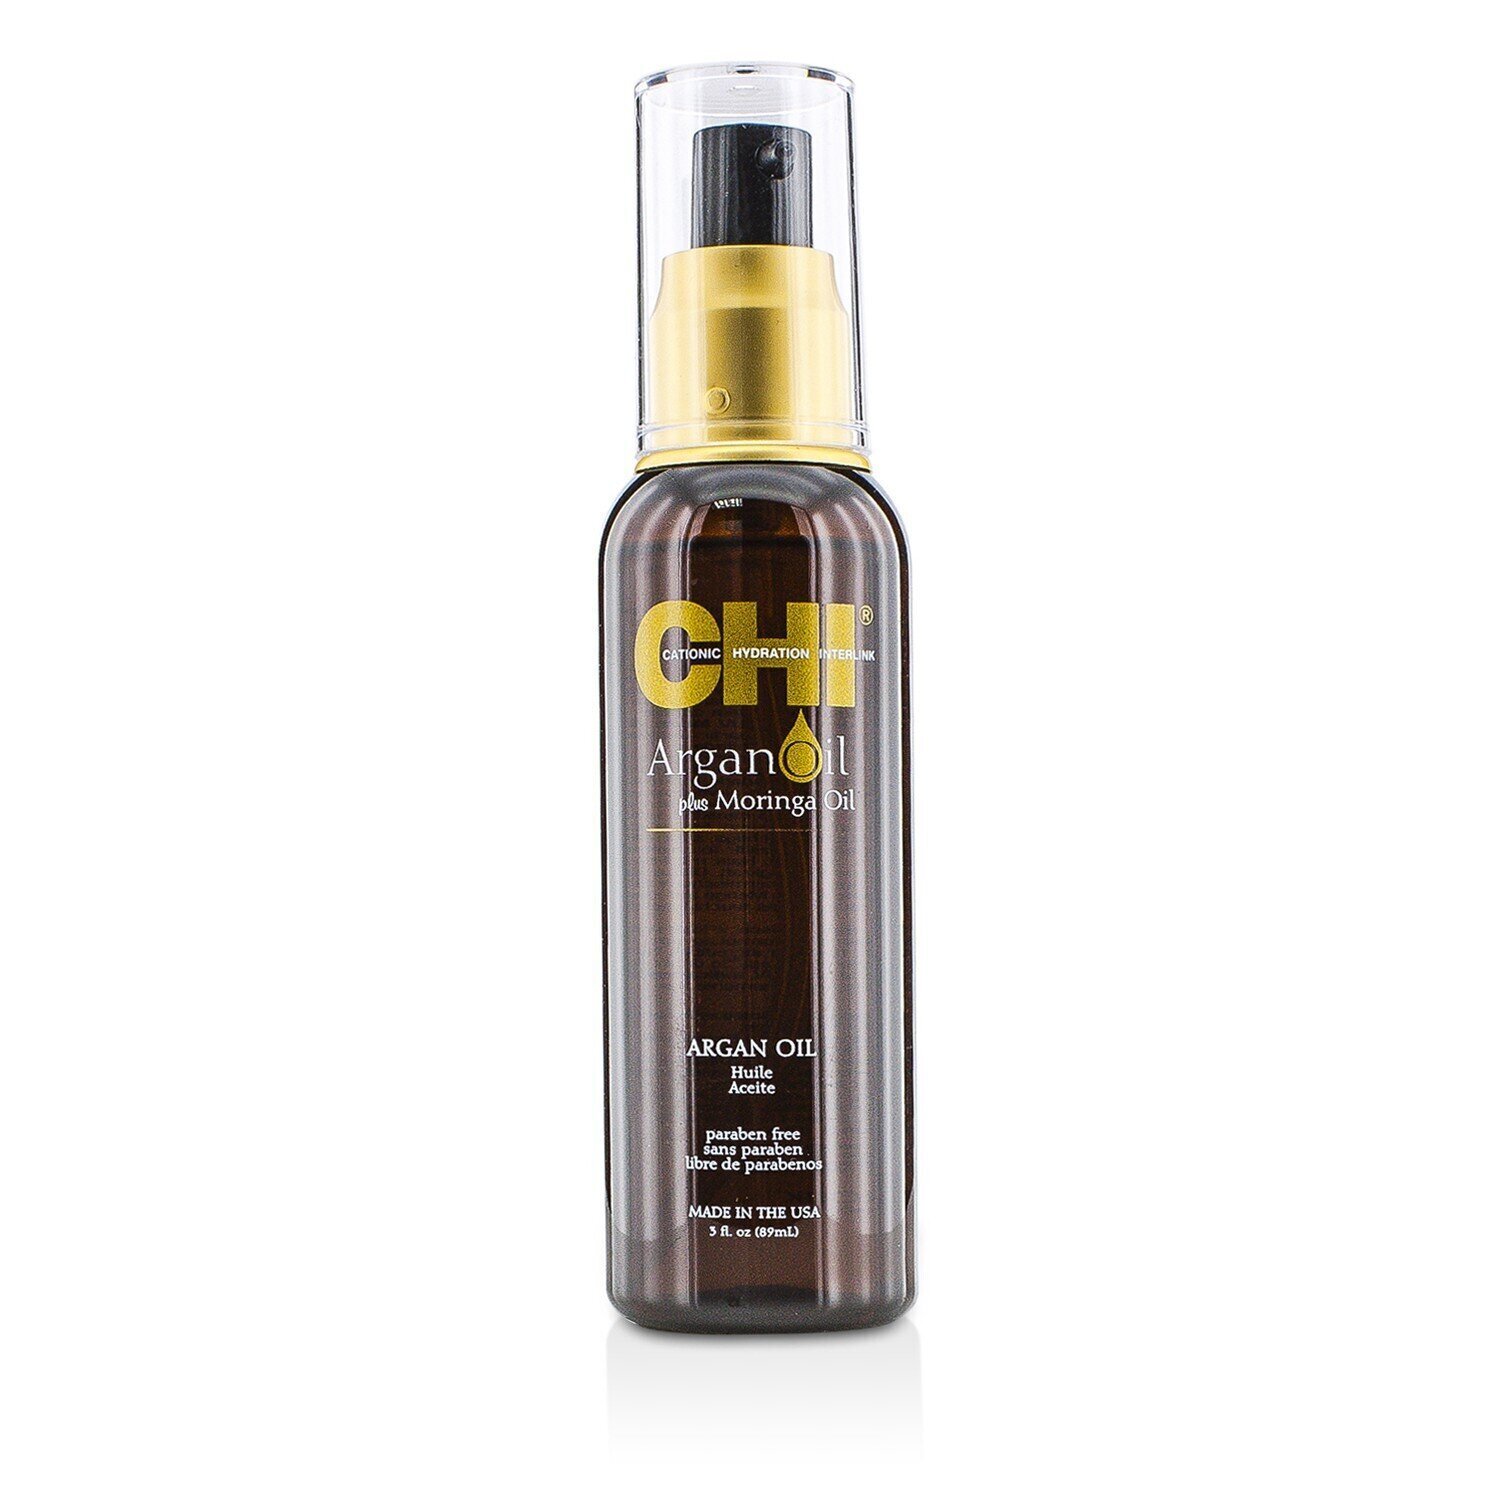 CHI - 摩洛哥堅果油和辣木護髮精油(摩洛哥堅果油) Argan Oil Plus Moringa Oil